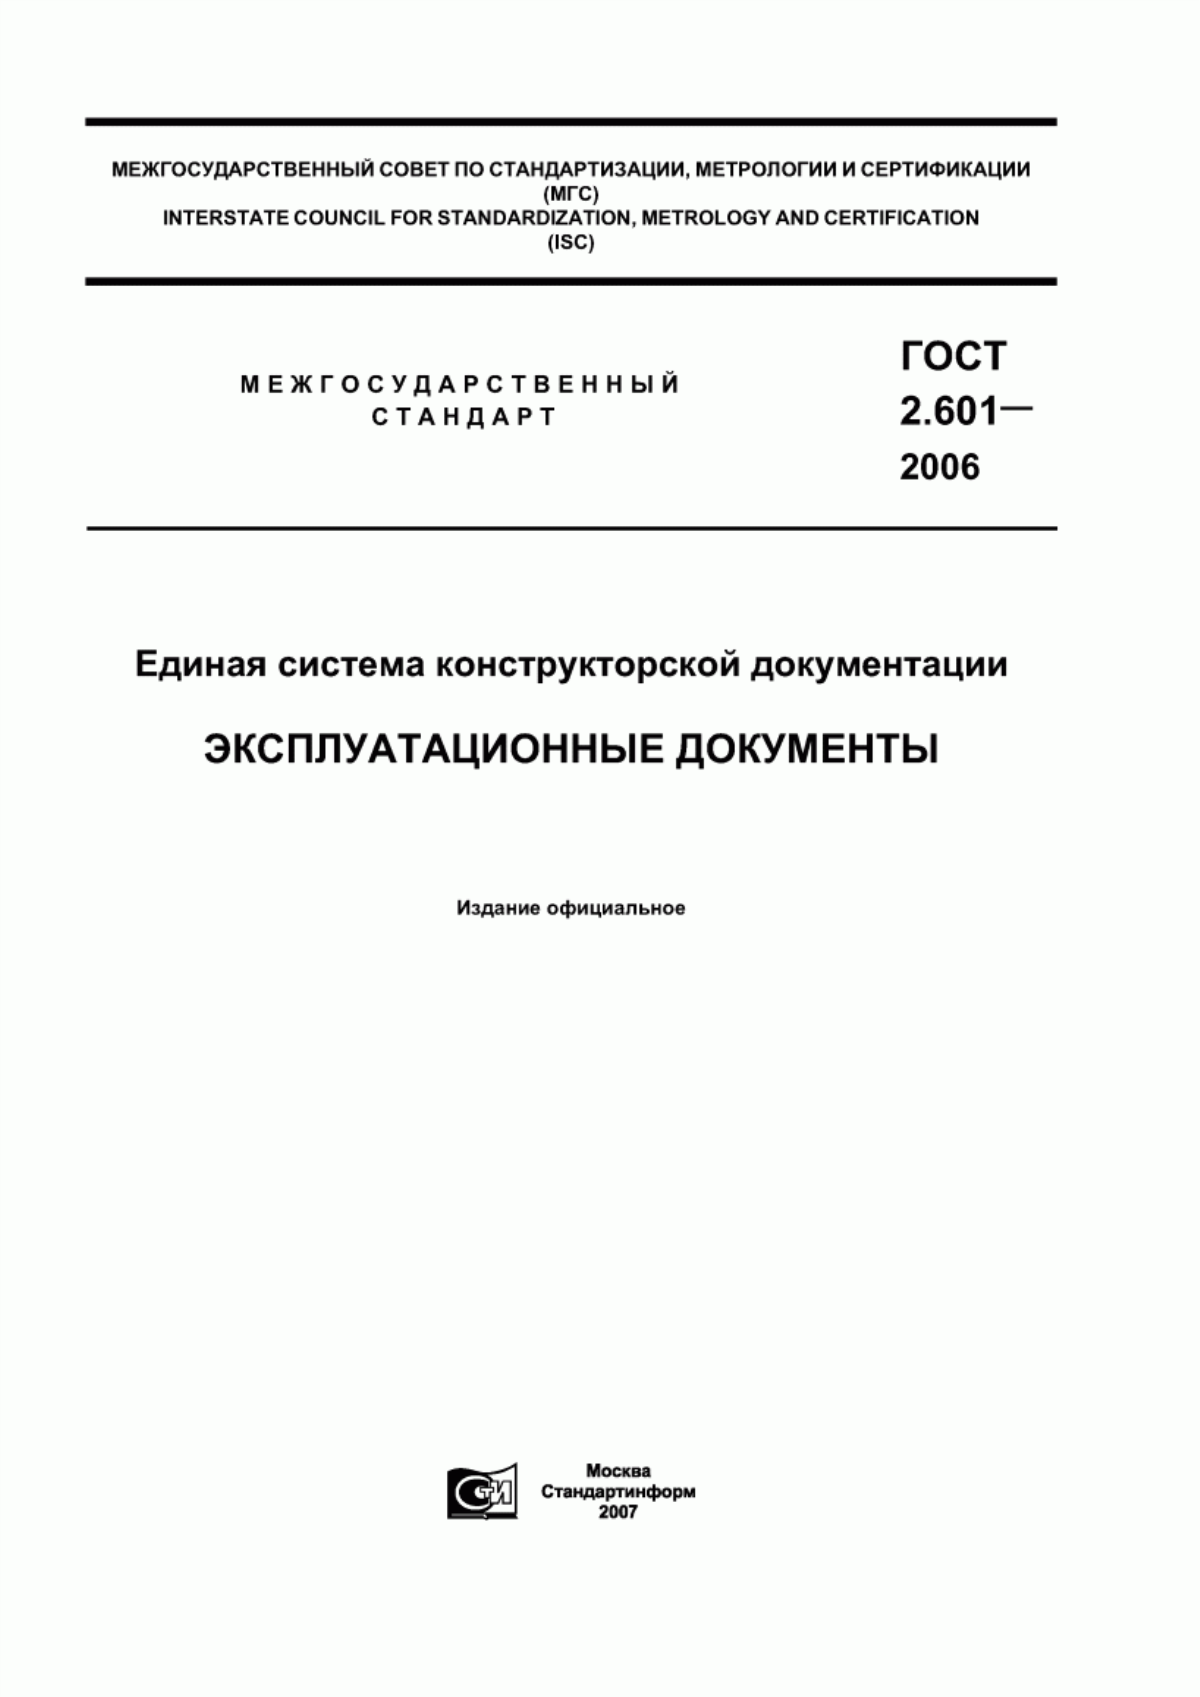 ГОСТ 2.601-2006 Единая система конструкторской документации. Эксплуатационные документы